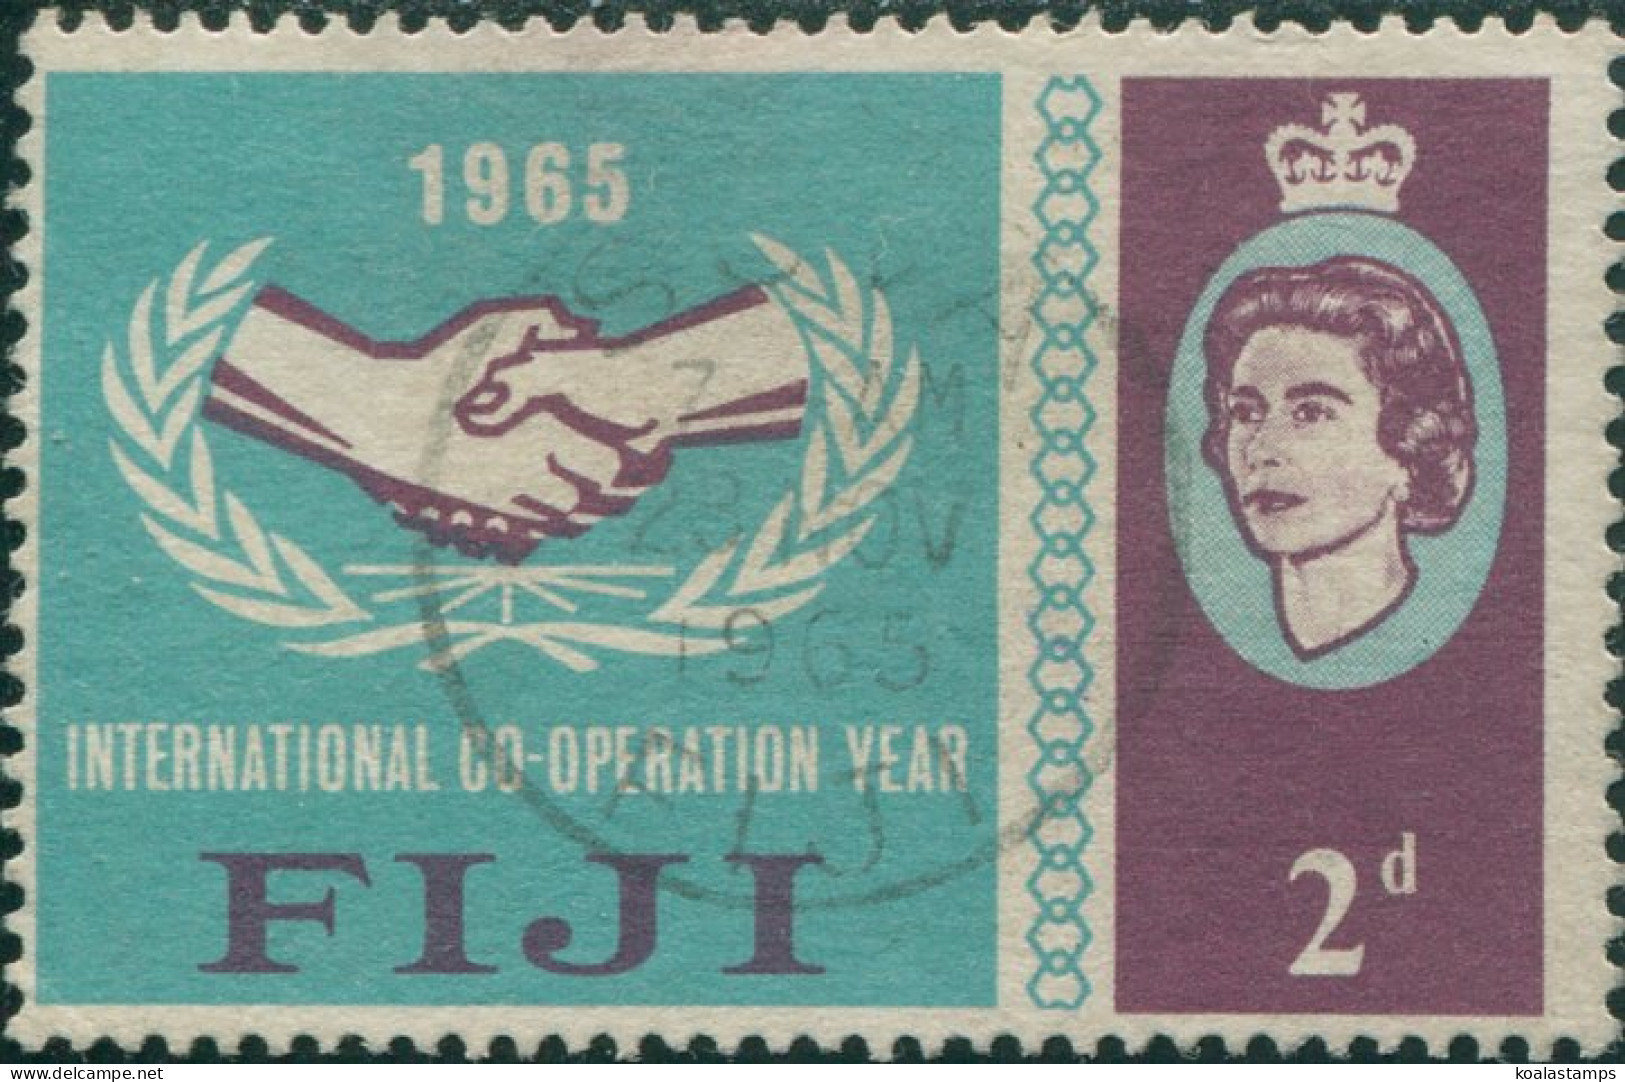 Fiji 1965 SG343 2d ICY Emblem QEII FU - Fidji (1970-...)